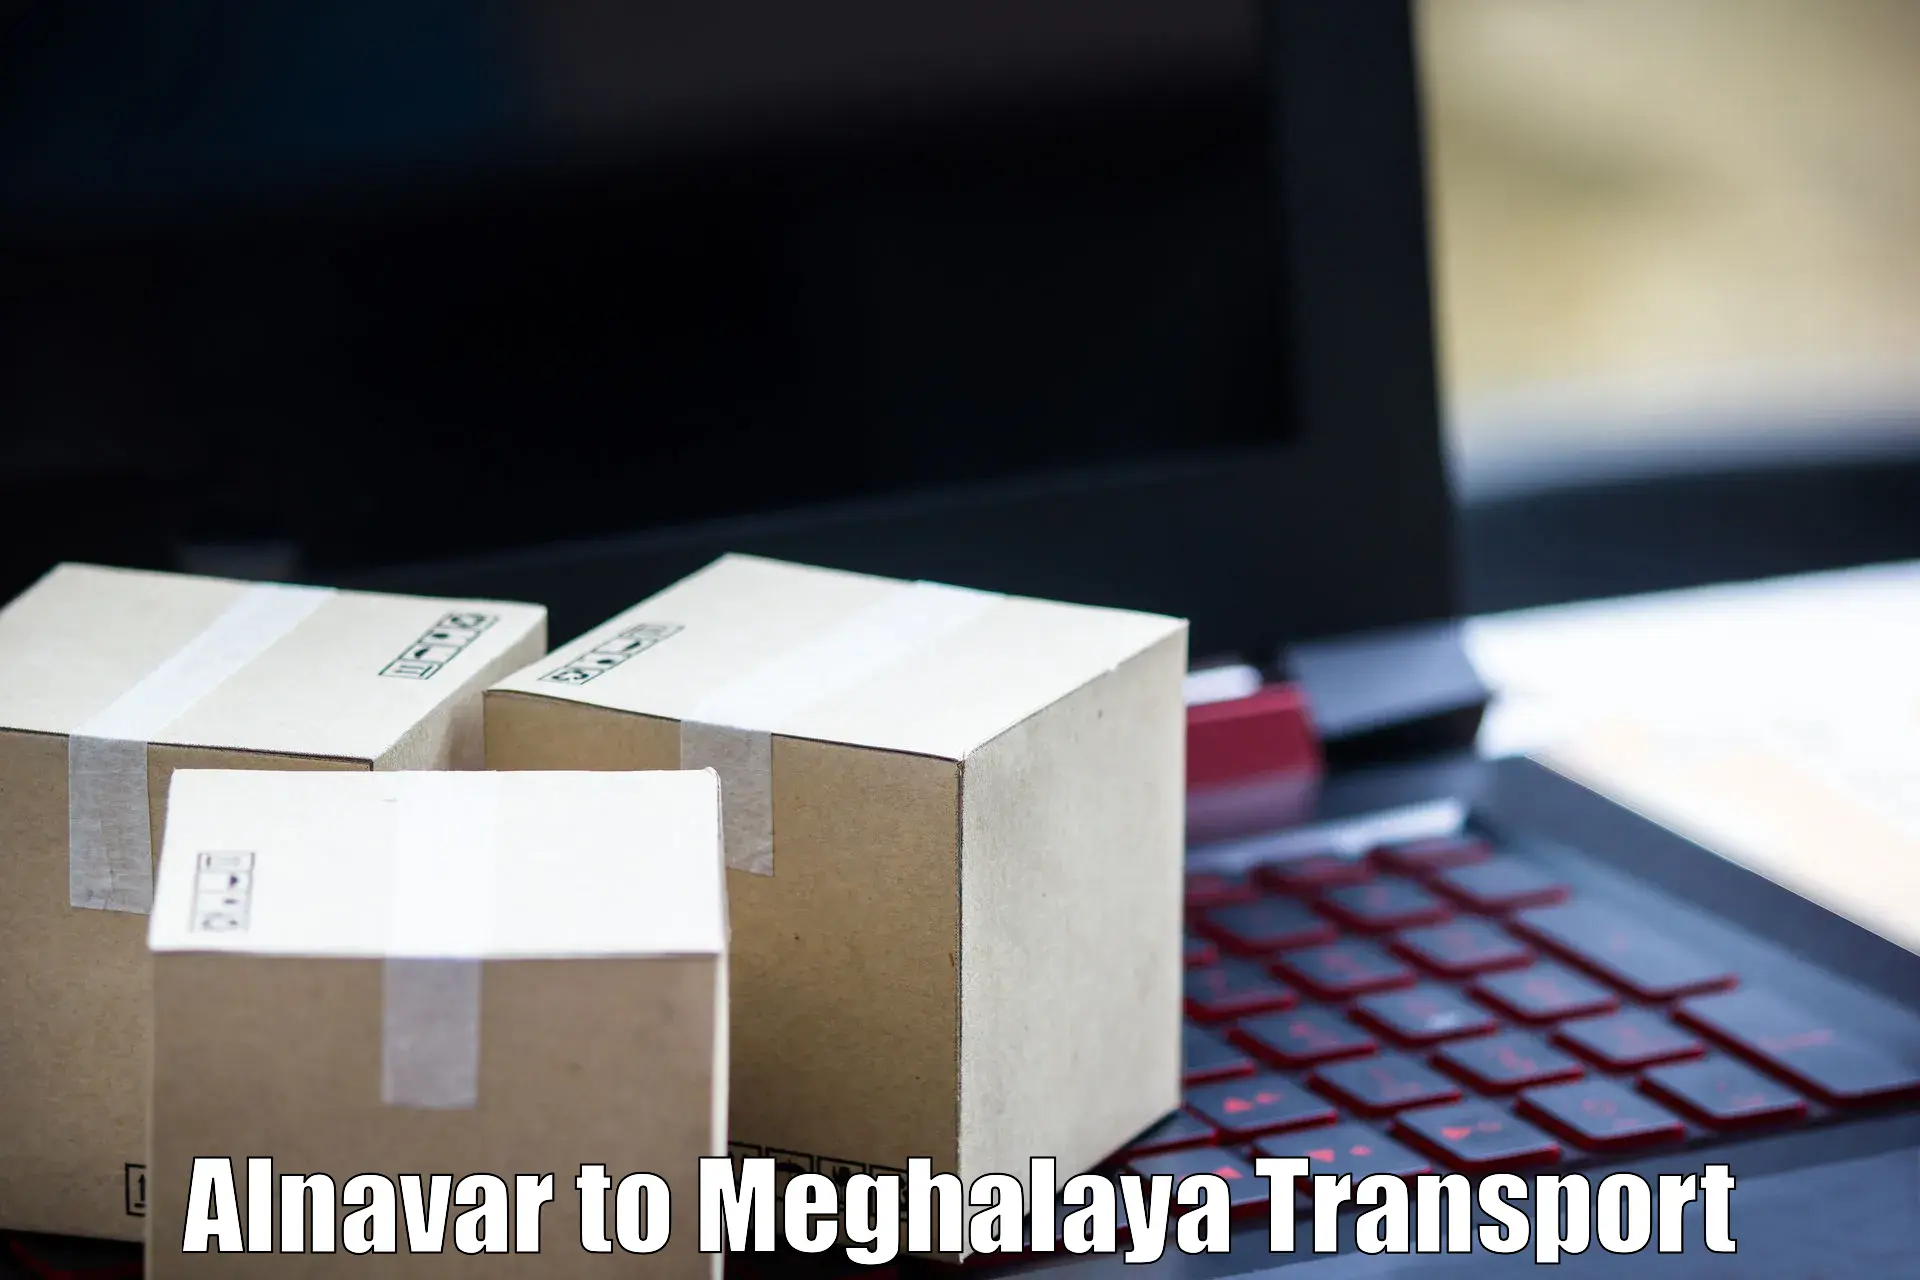 Goods delivery service Alnavar to Jaintia Hills